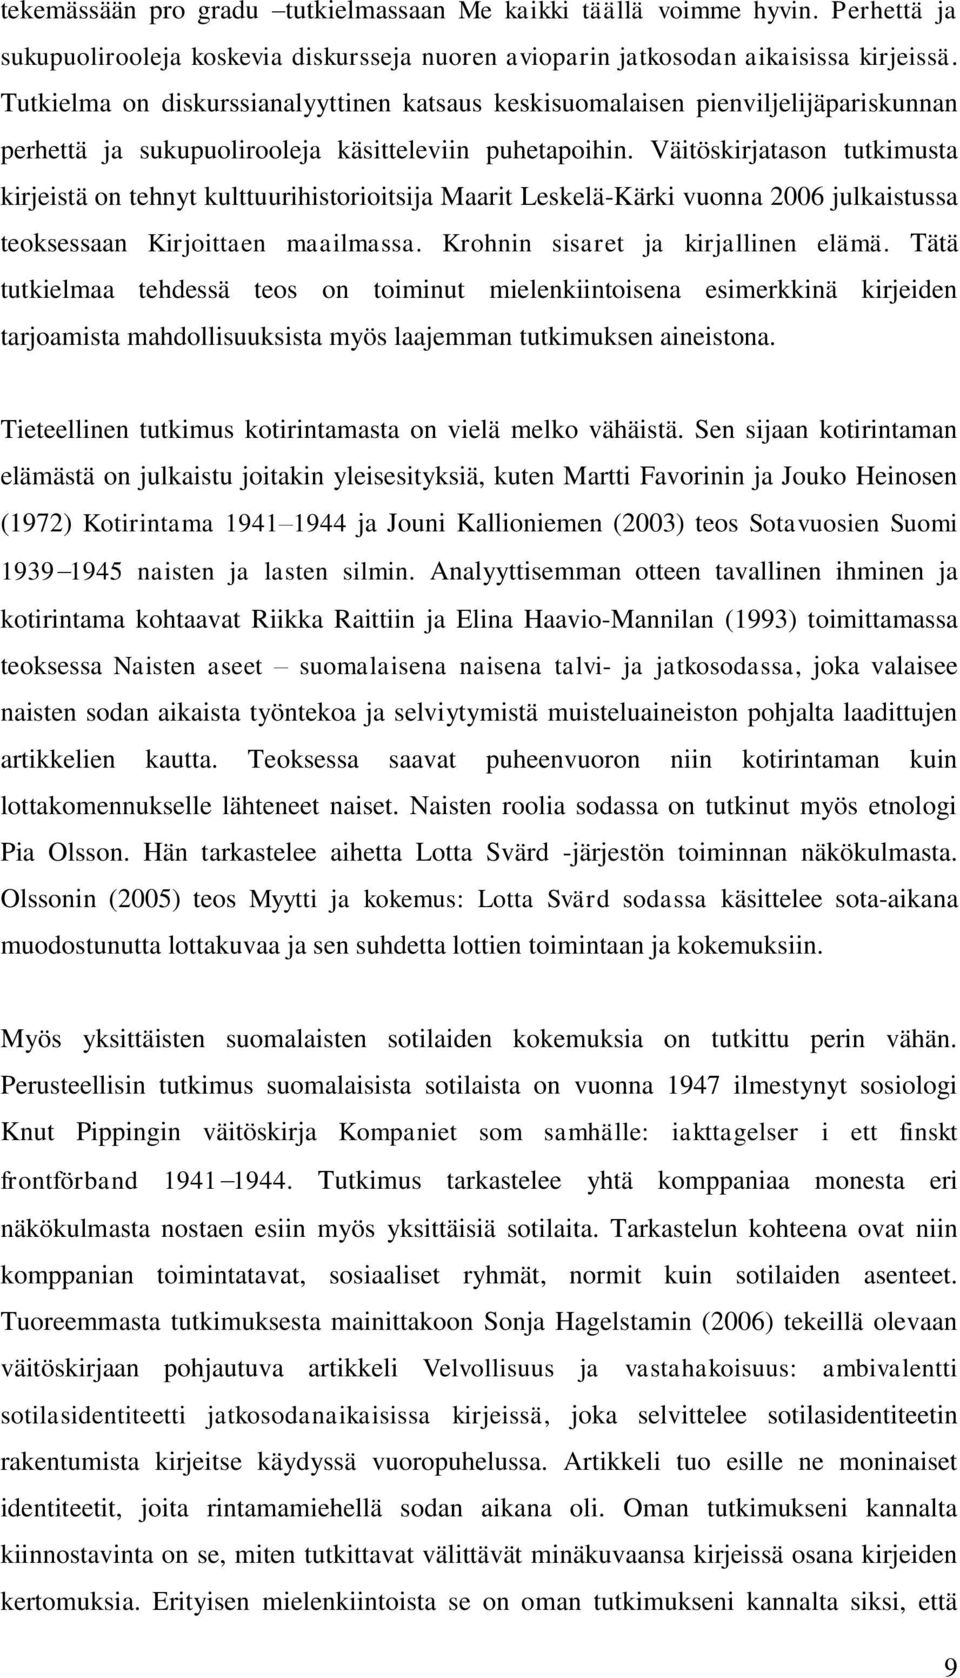 Väitöskirjatason tutkimusta kirjeistä on tehnyt kulttuurihistorioitsija Maarit Leskelä-Kärki vuonna 2006 julkaistussa teoksessaan Kirjoittaen maailmassa. Krohnin sisaret ja kirjallinen elämä.